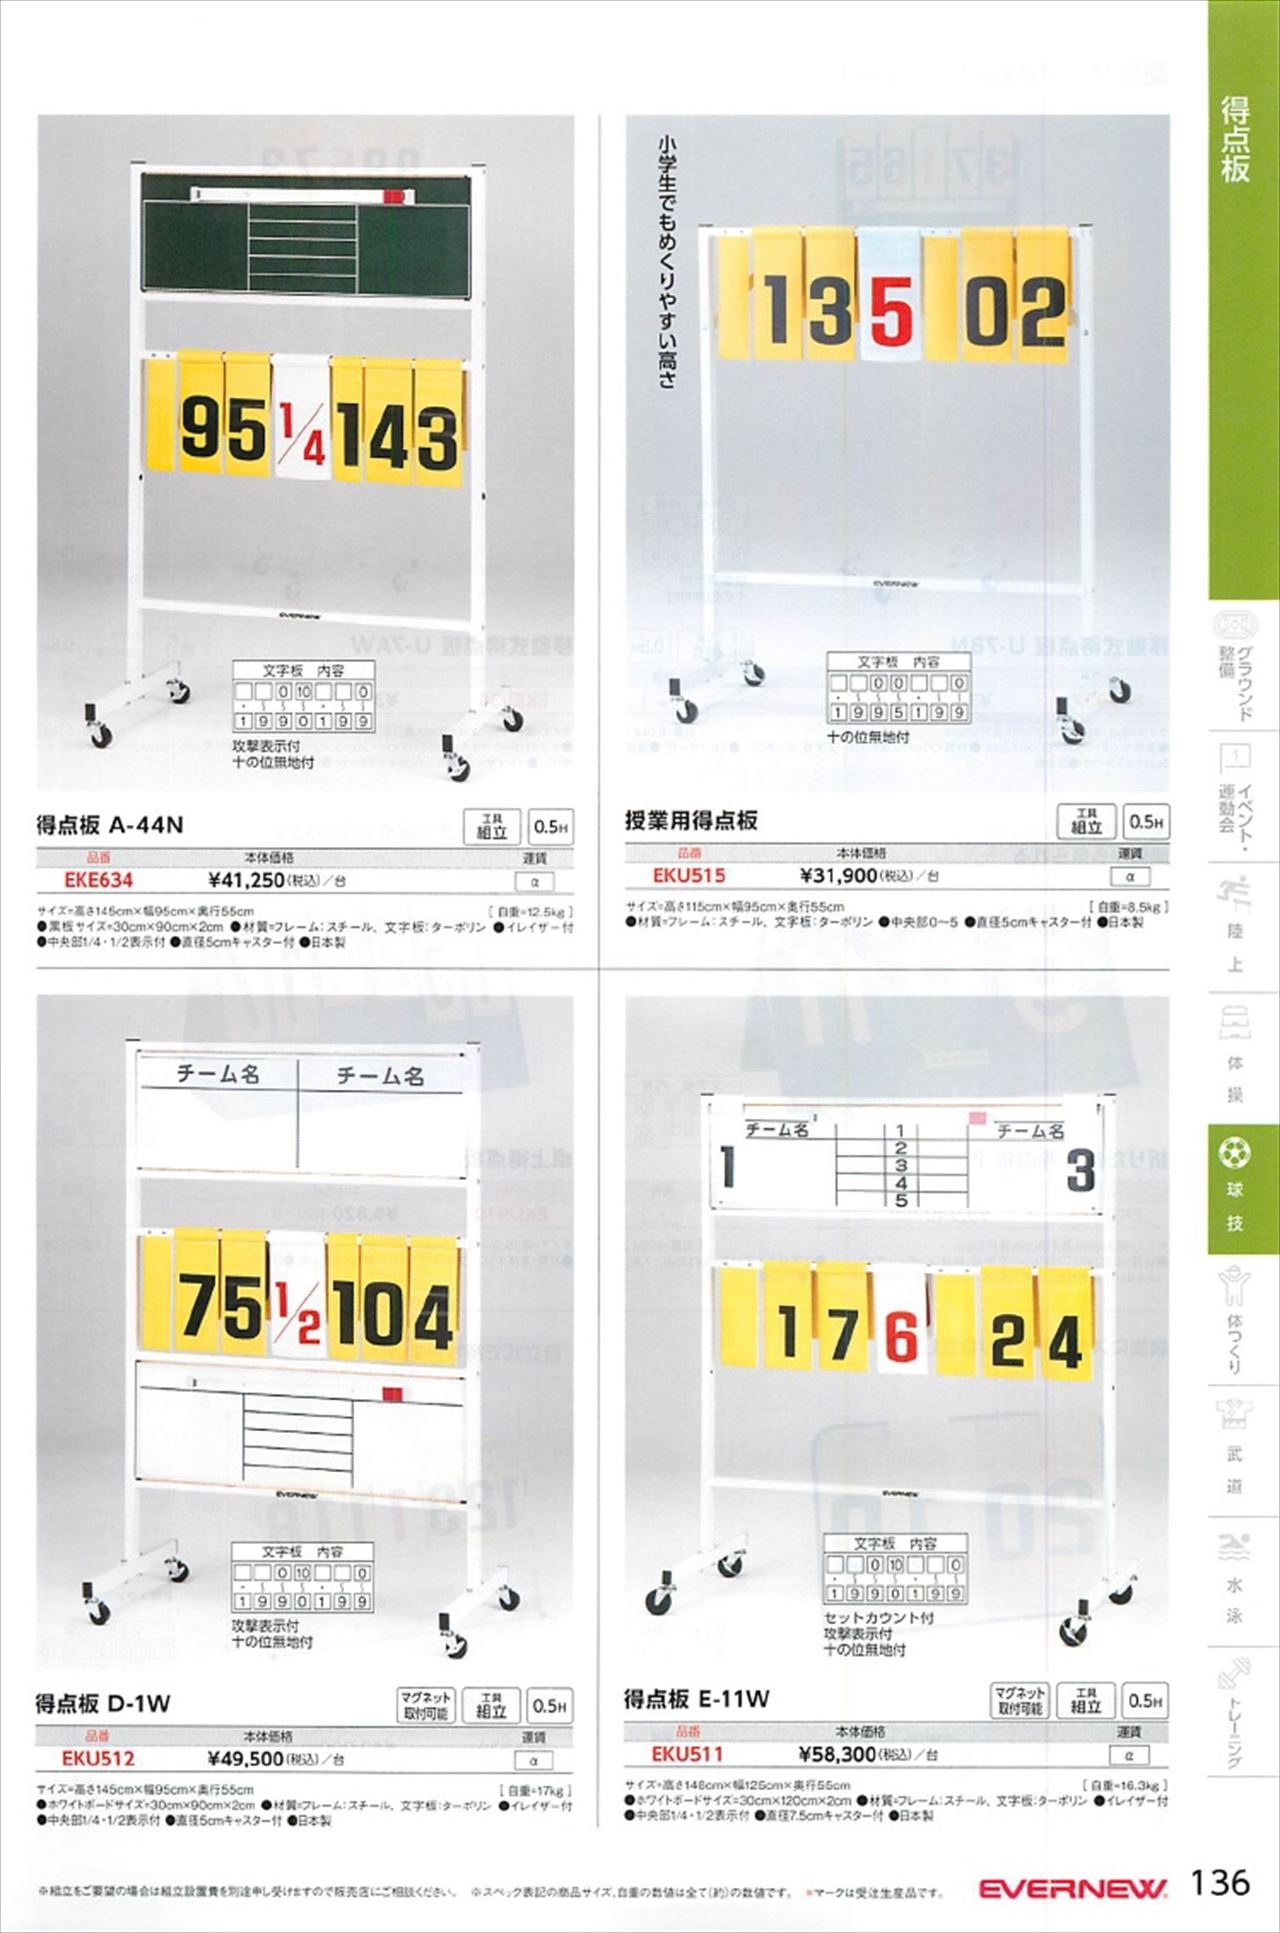 バスケット用得点板は エバニュー21カタログ の ページ136 に掲載されています スポーツメーカーカタログ 目次ページ